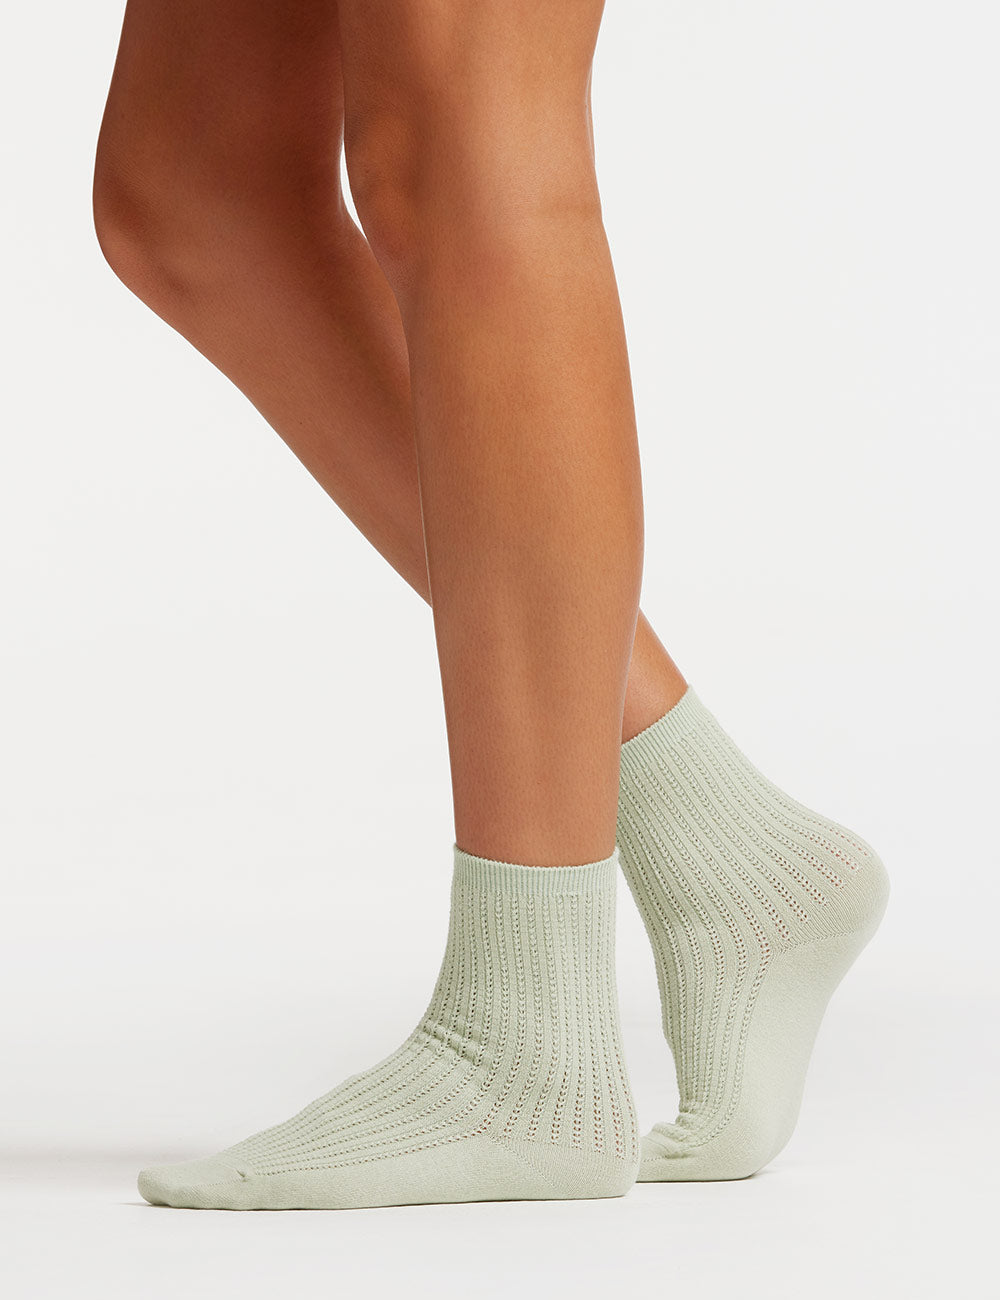 Womens organic cotton socks,  ambra